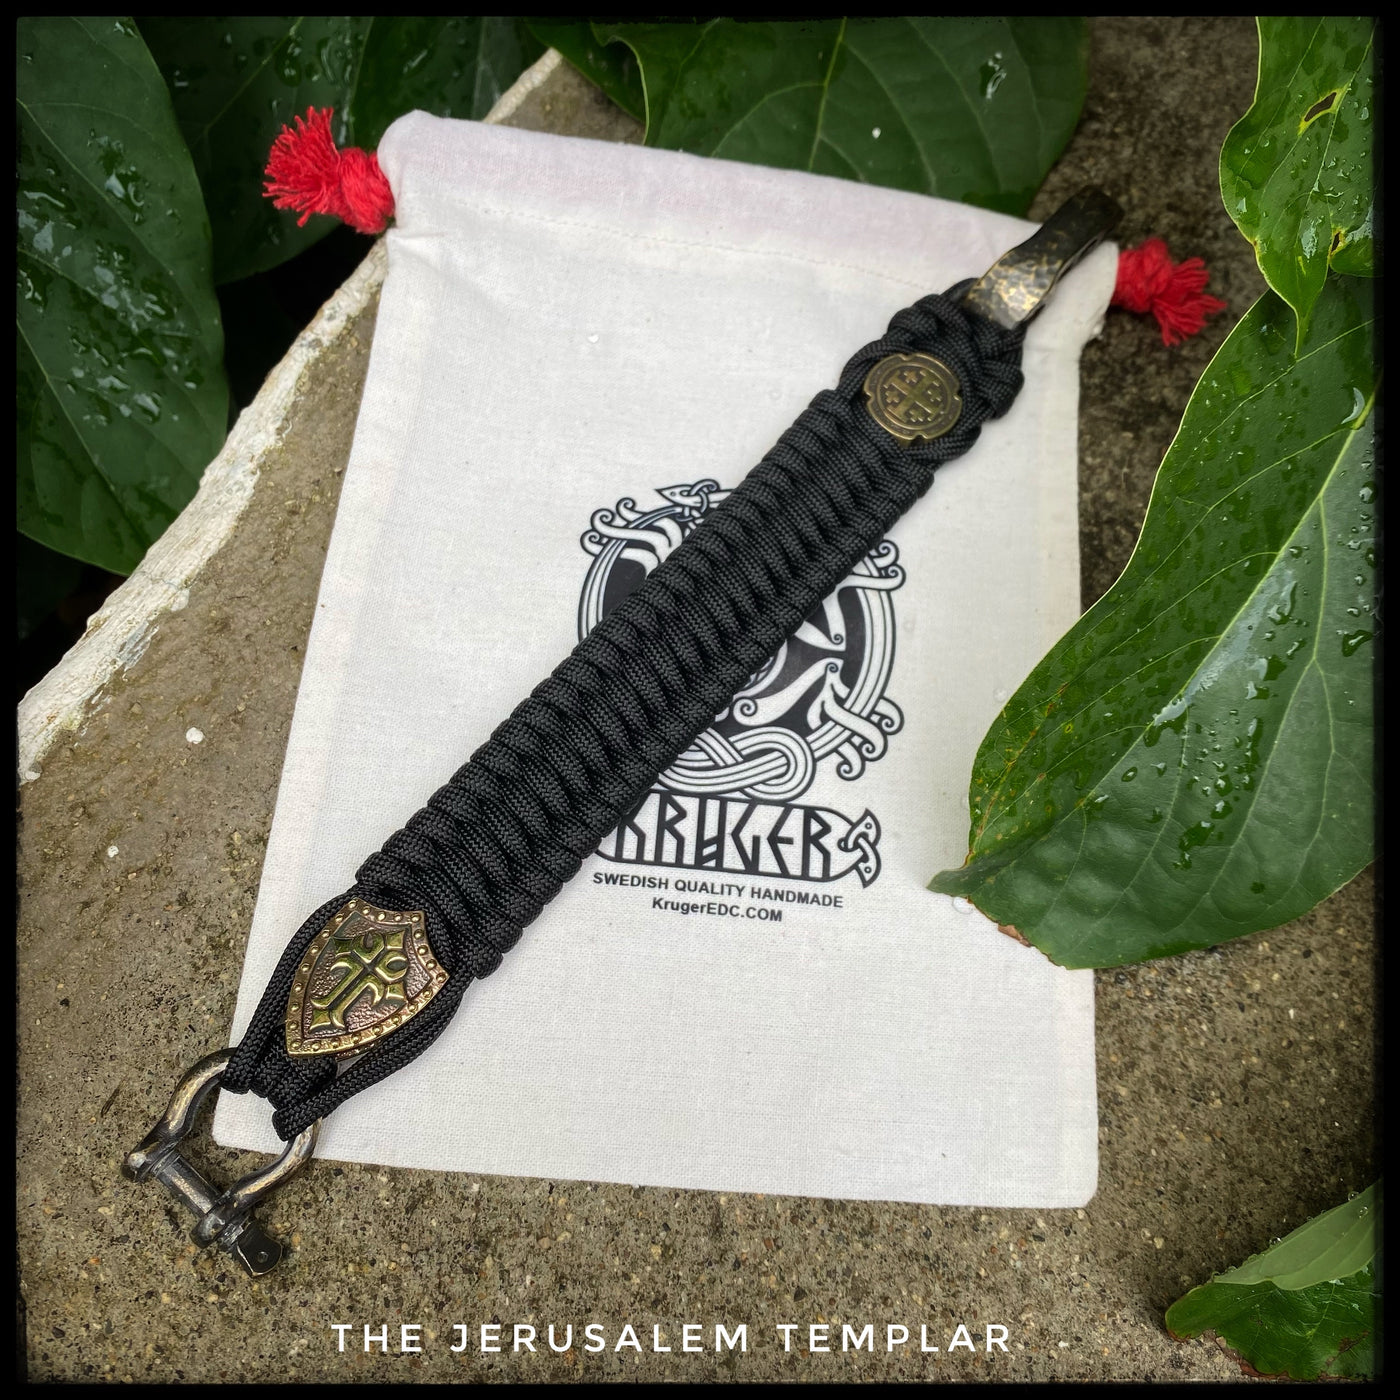 The Jerusalem Templar bracelet